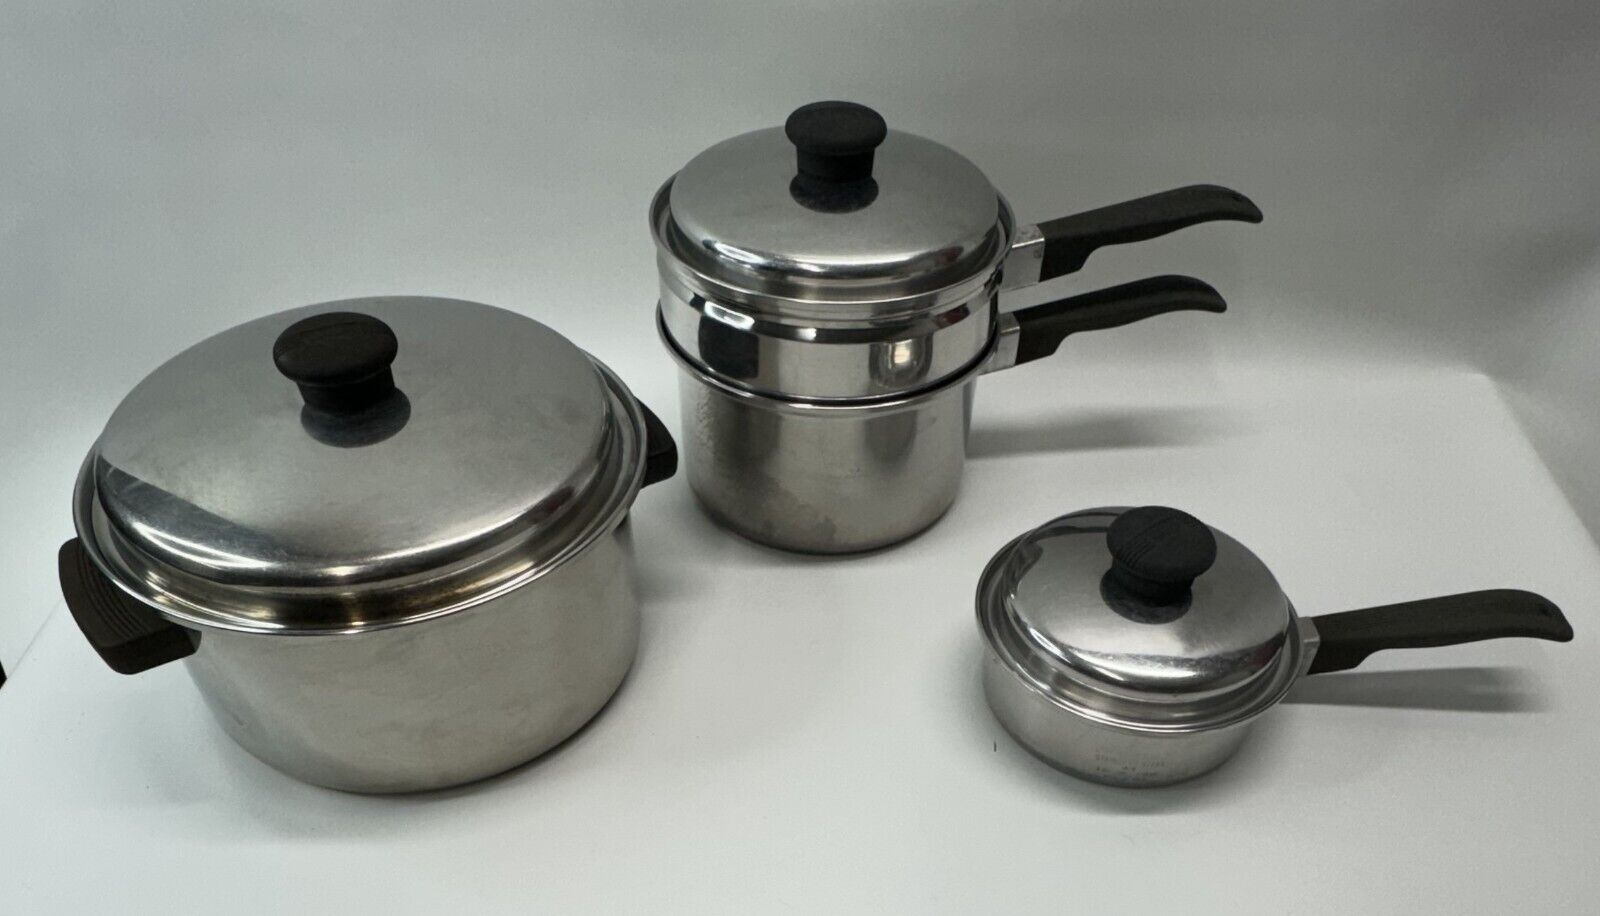 Vintage Kitchen Craft Cookware Set Aluminum Pots Pans Lids 6,3,1 Qt Free S&H